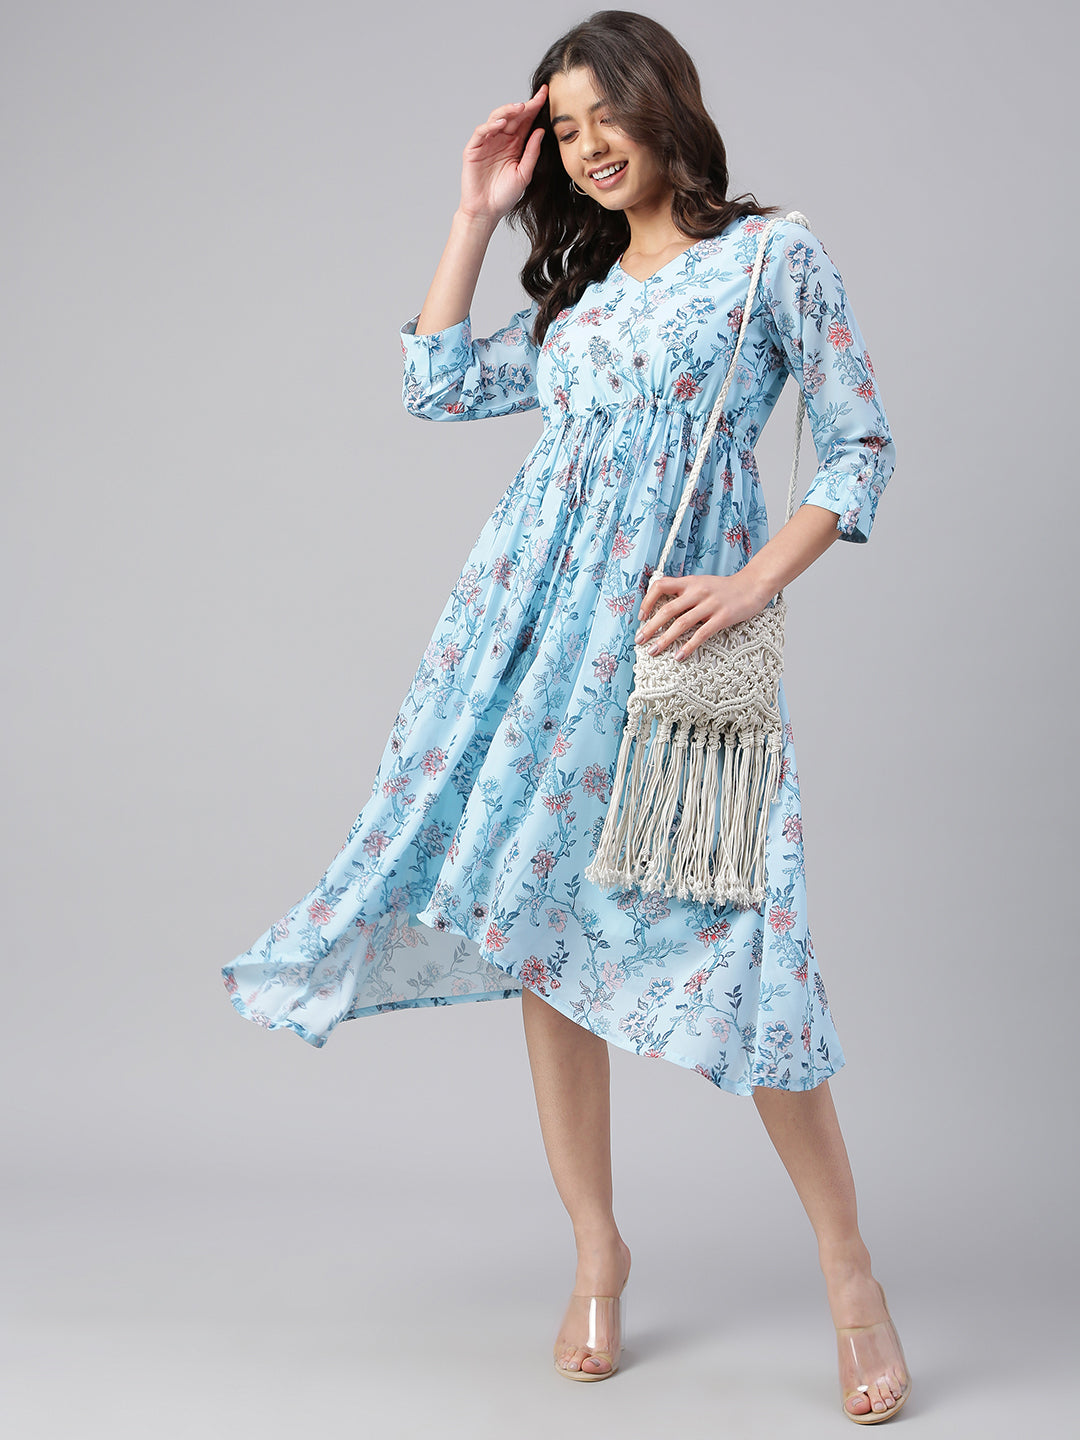 Women's Floral Printed Sky Blue Georgette Dress - Janasya